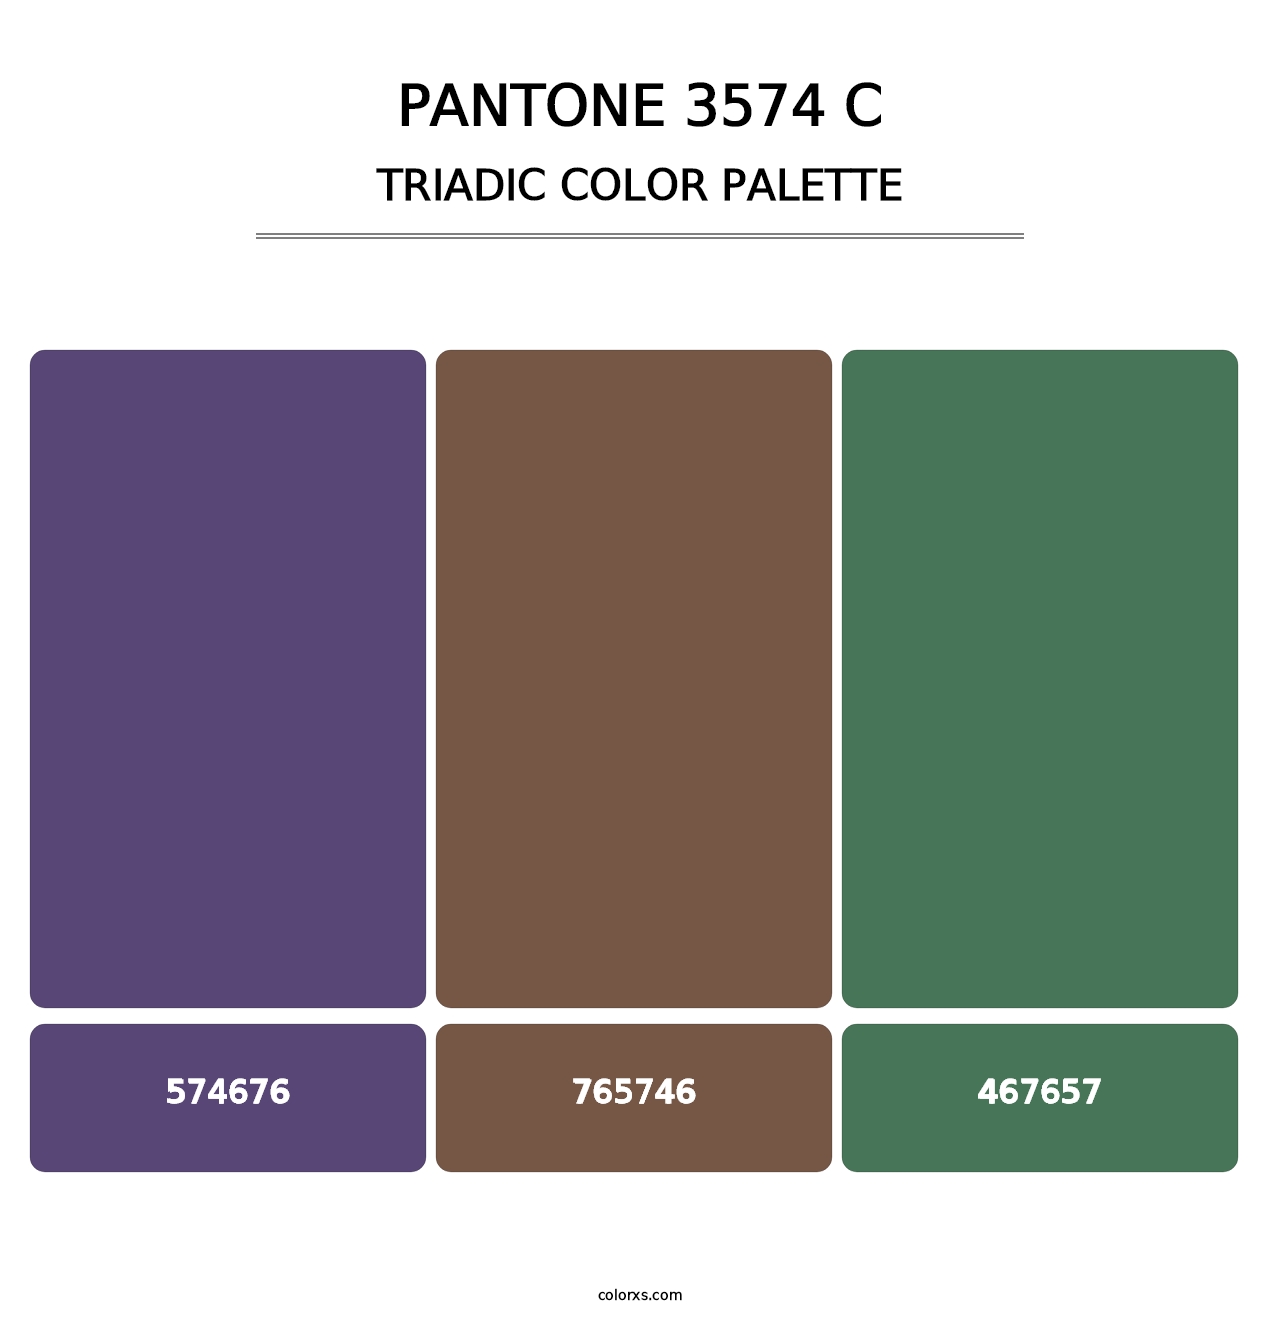 PANTONE 3574 C - Triadic Color Palette